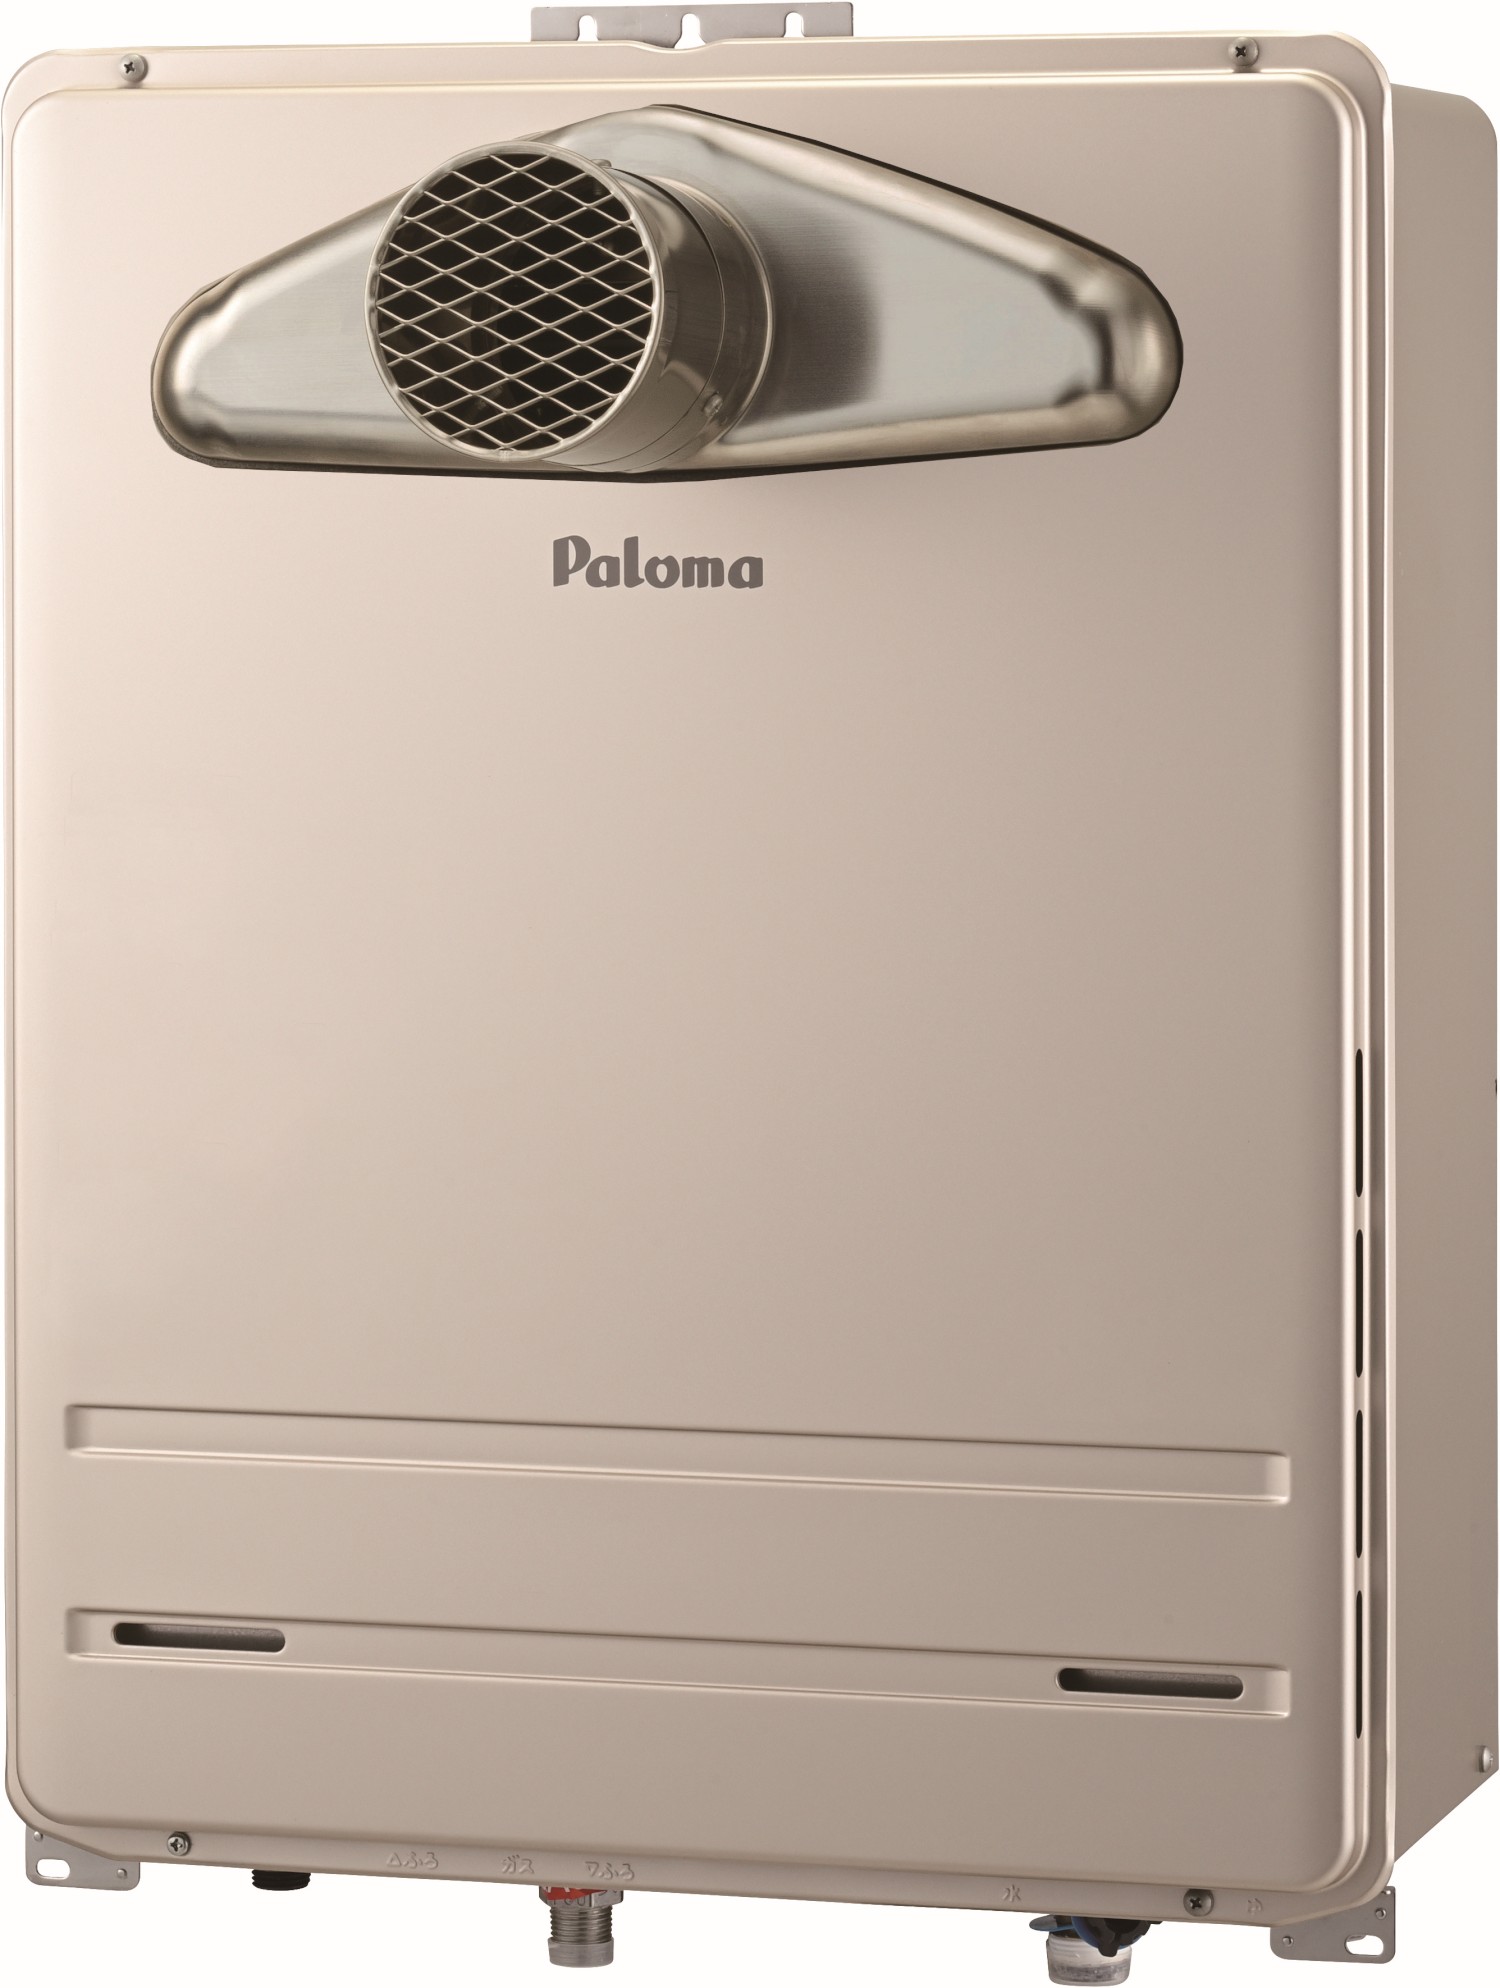 本物 [FH-2013SAWL-13A] 壁掛型・PS標準設置型 パロマ ガス給湯器 オート 20号 給水接続15A 従来型 リモコン 給湯器 